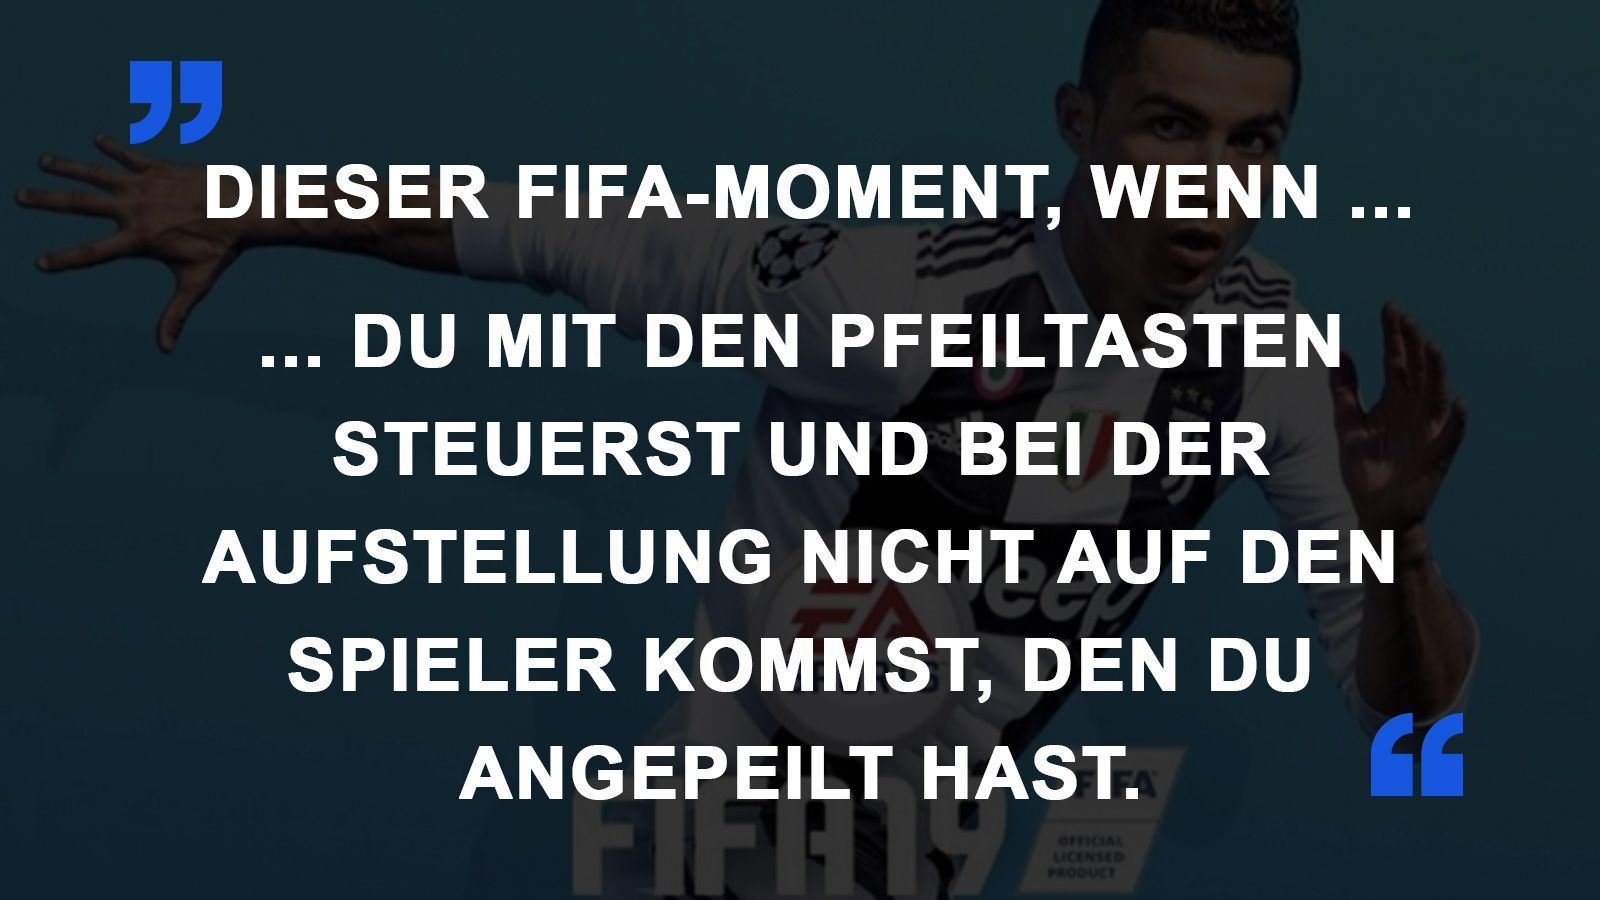 
                <strong>FIFA Momente Pfeiltasten</strong><br>
                
              